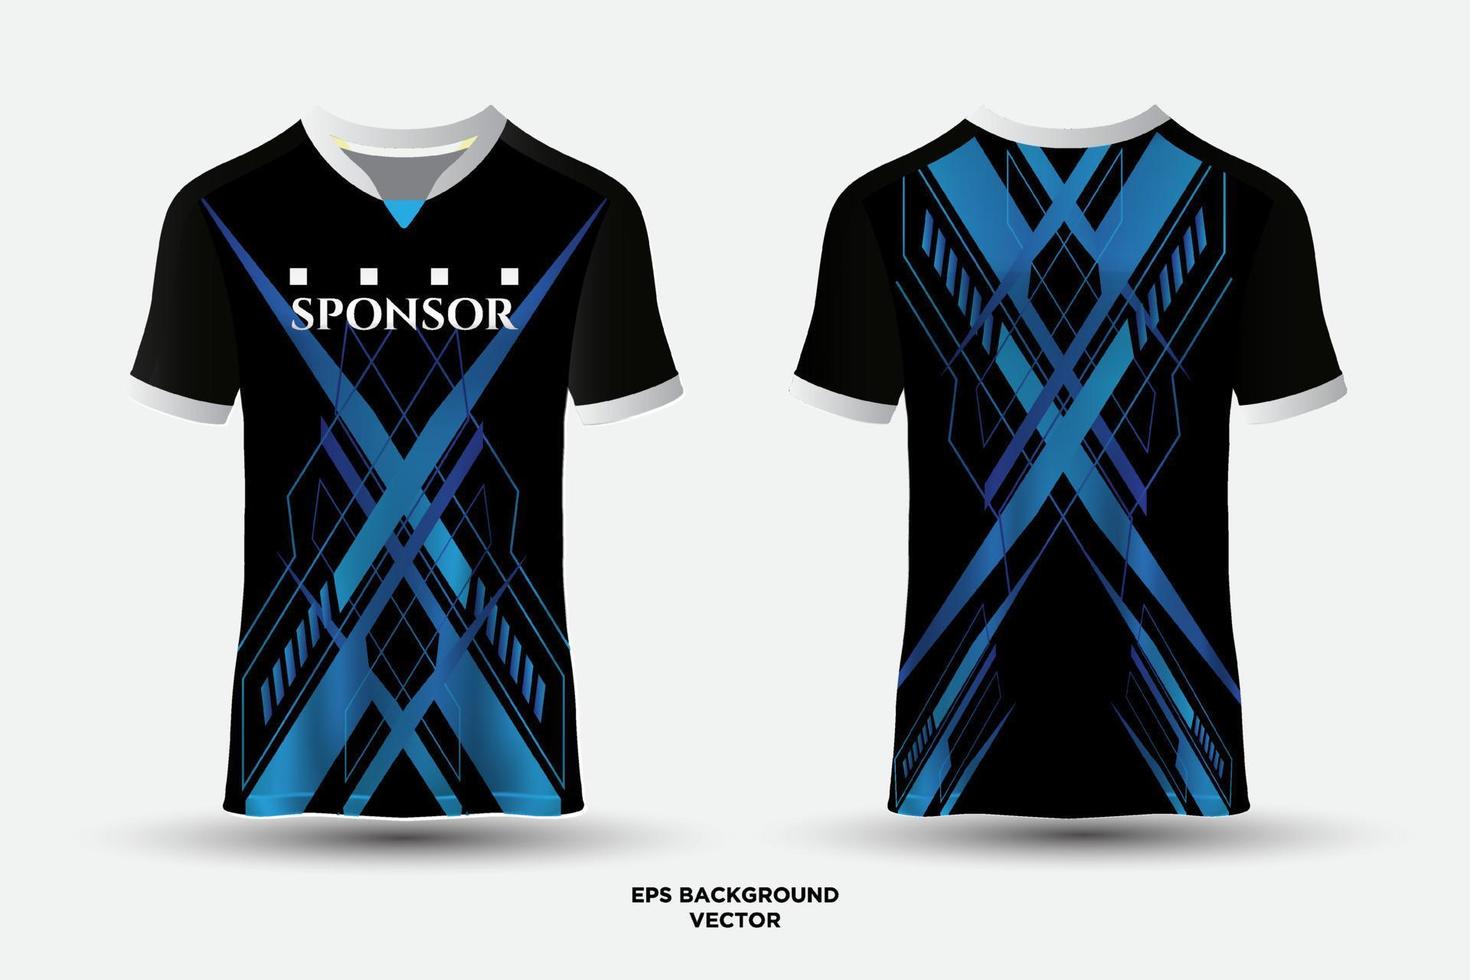 prachtige en bizarre t-shirt sport abstracte jersey geschikt voor racen, voetbal, gaming, motorcross, gaming, fietsen. vector